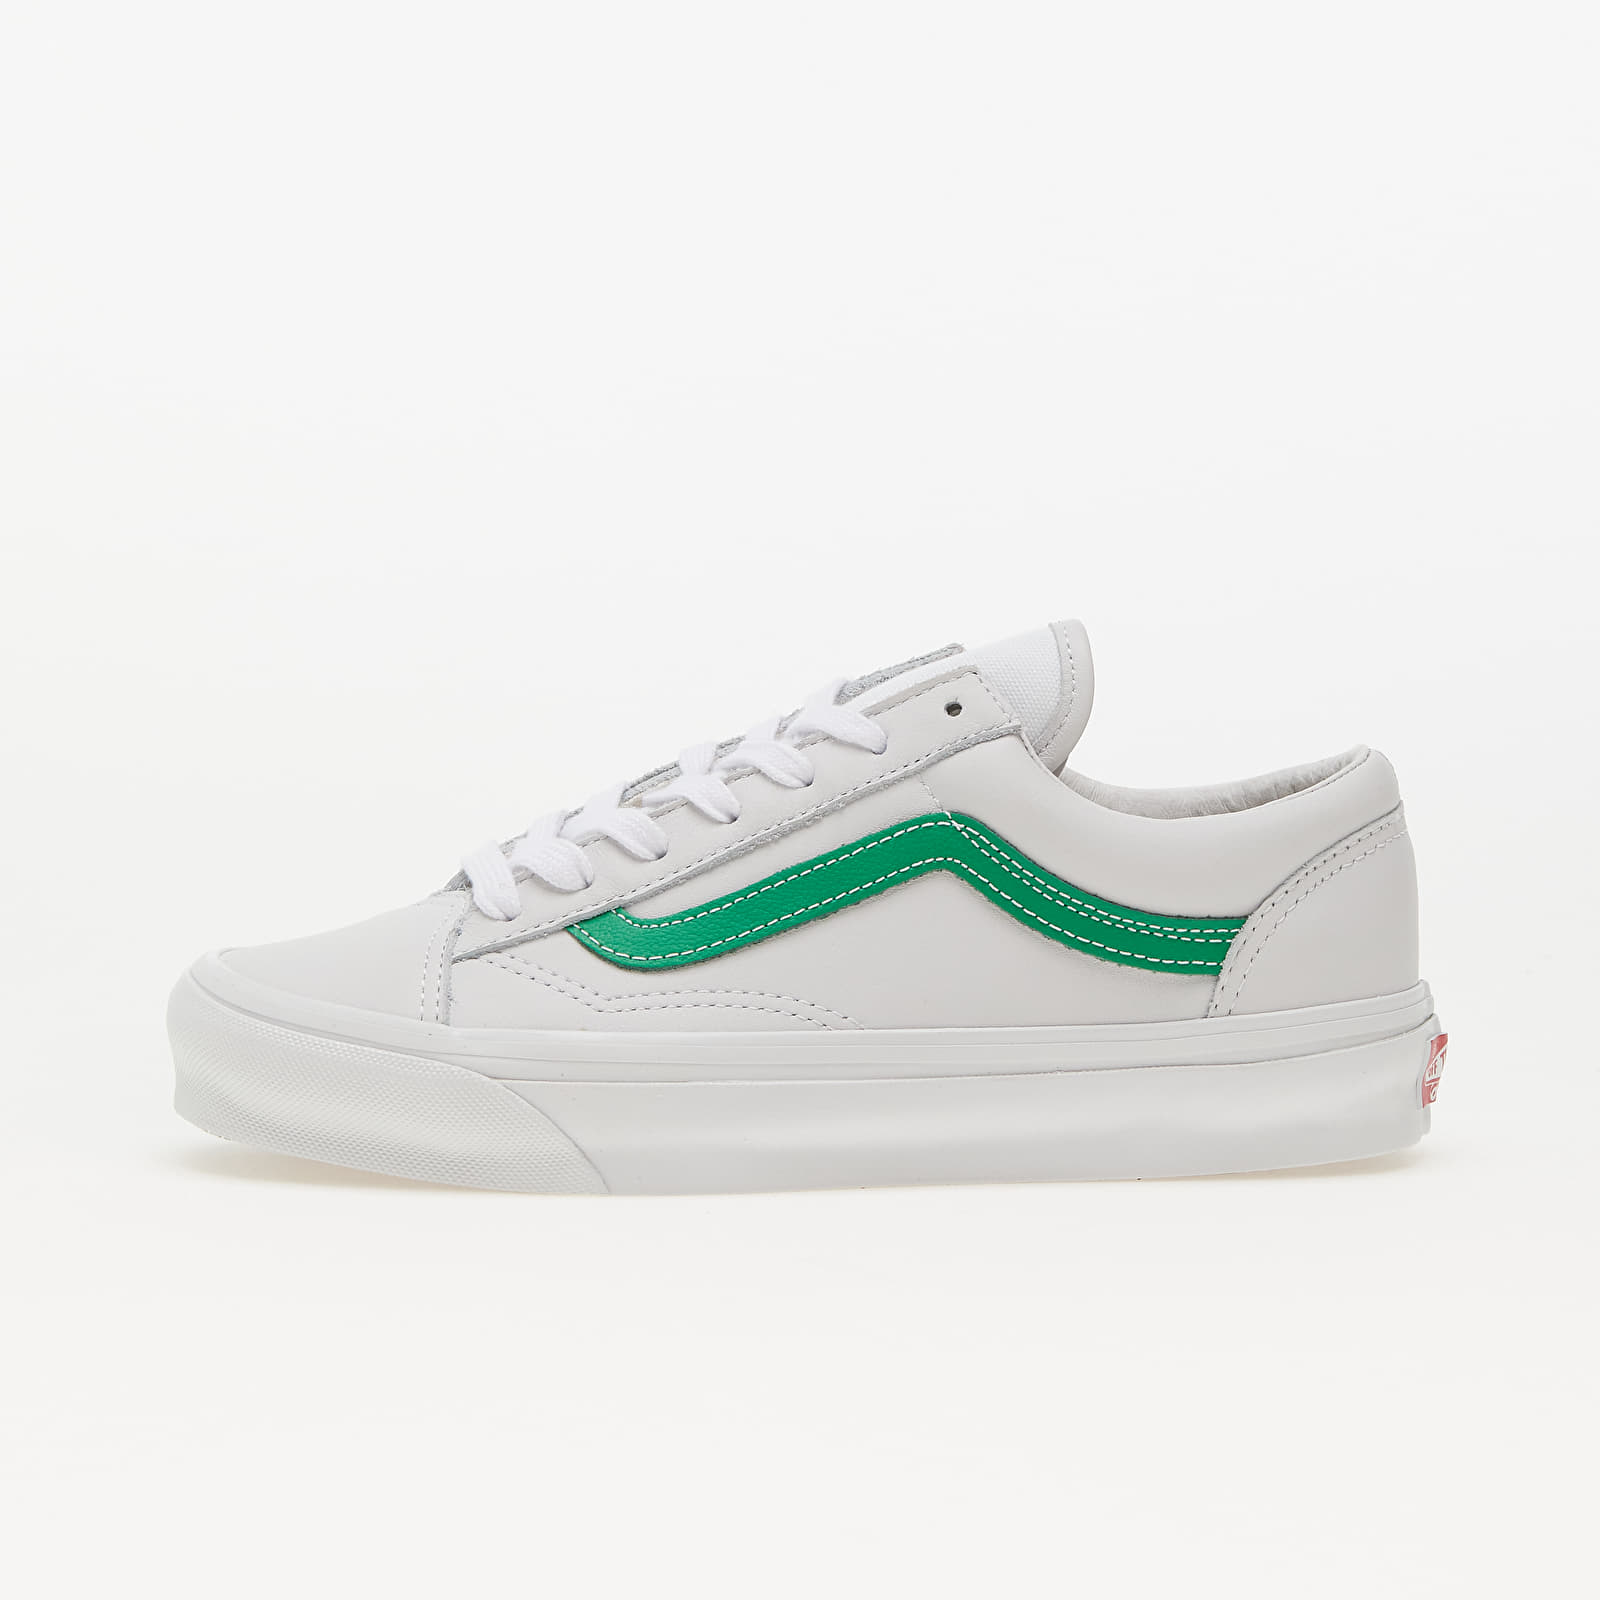 Pánske tenisky a topánky Vans OG Style 36 LX Green/ True White